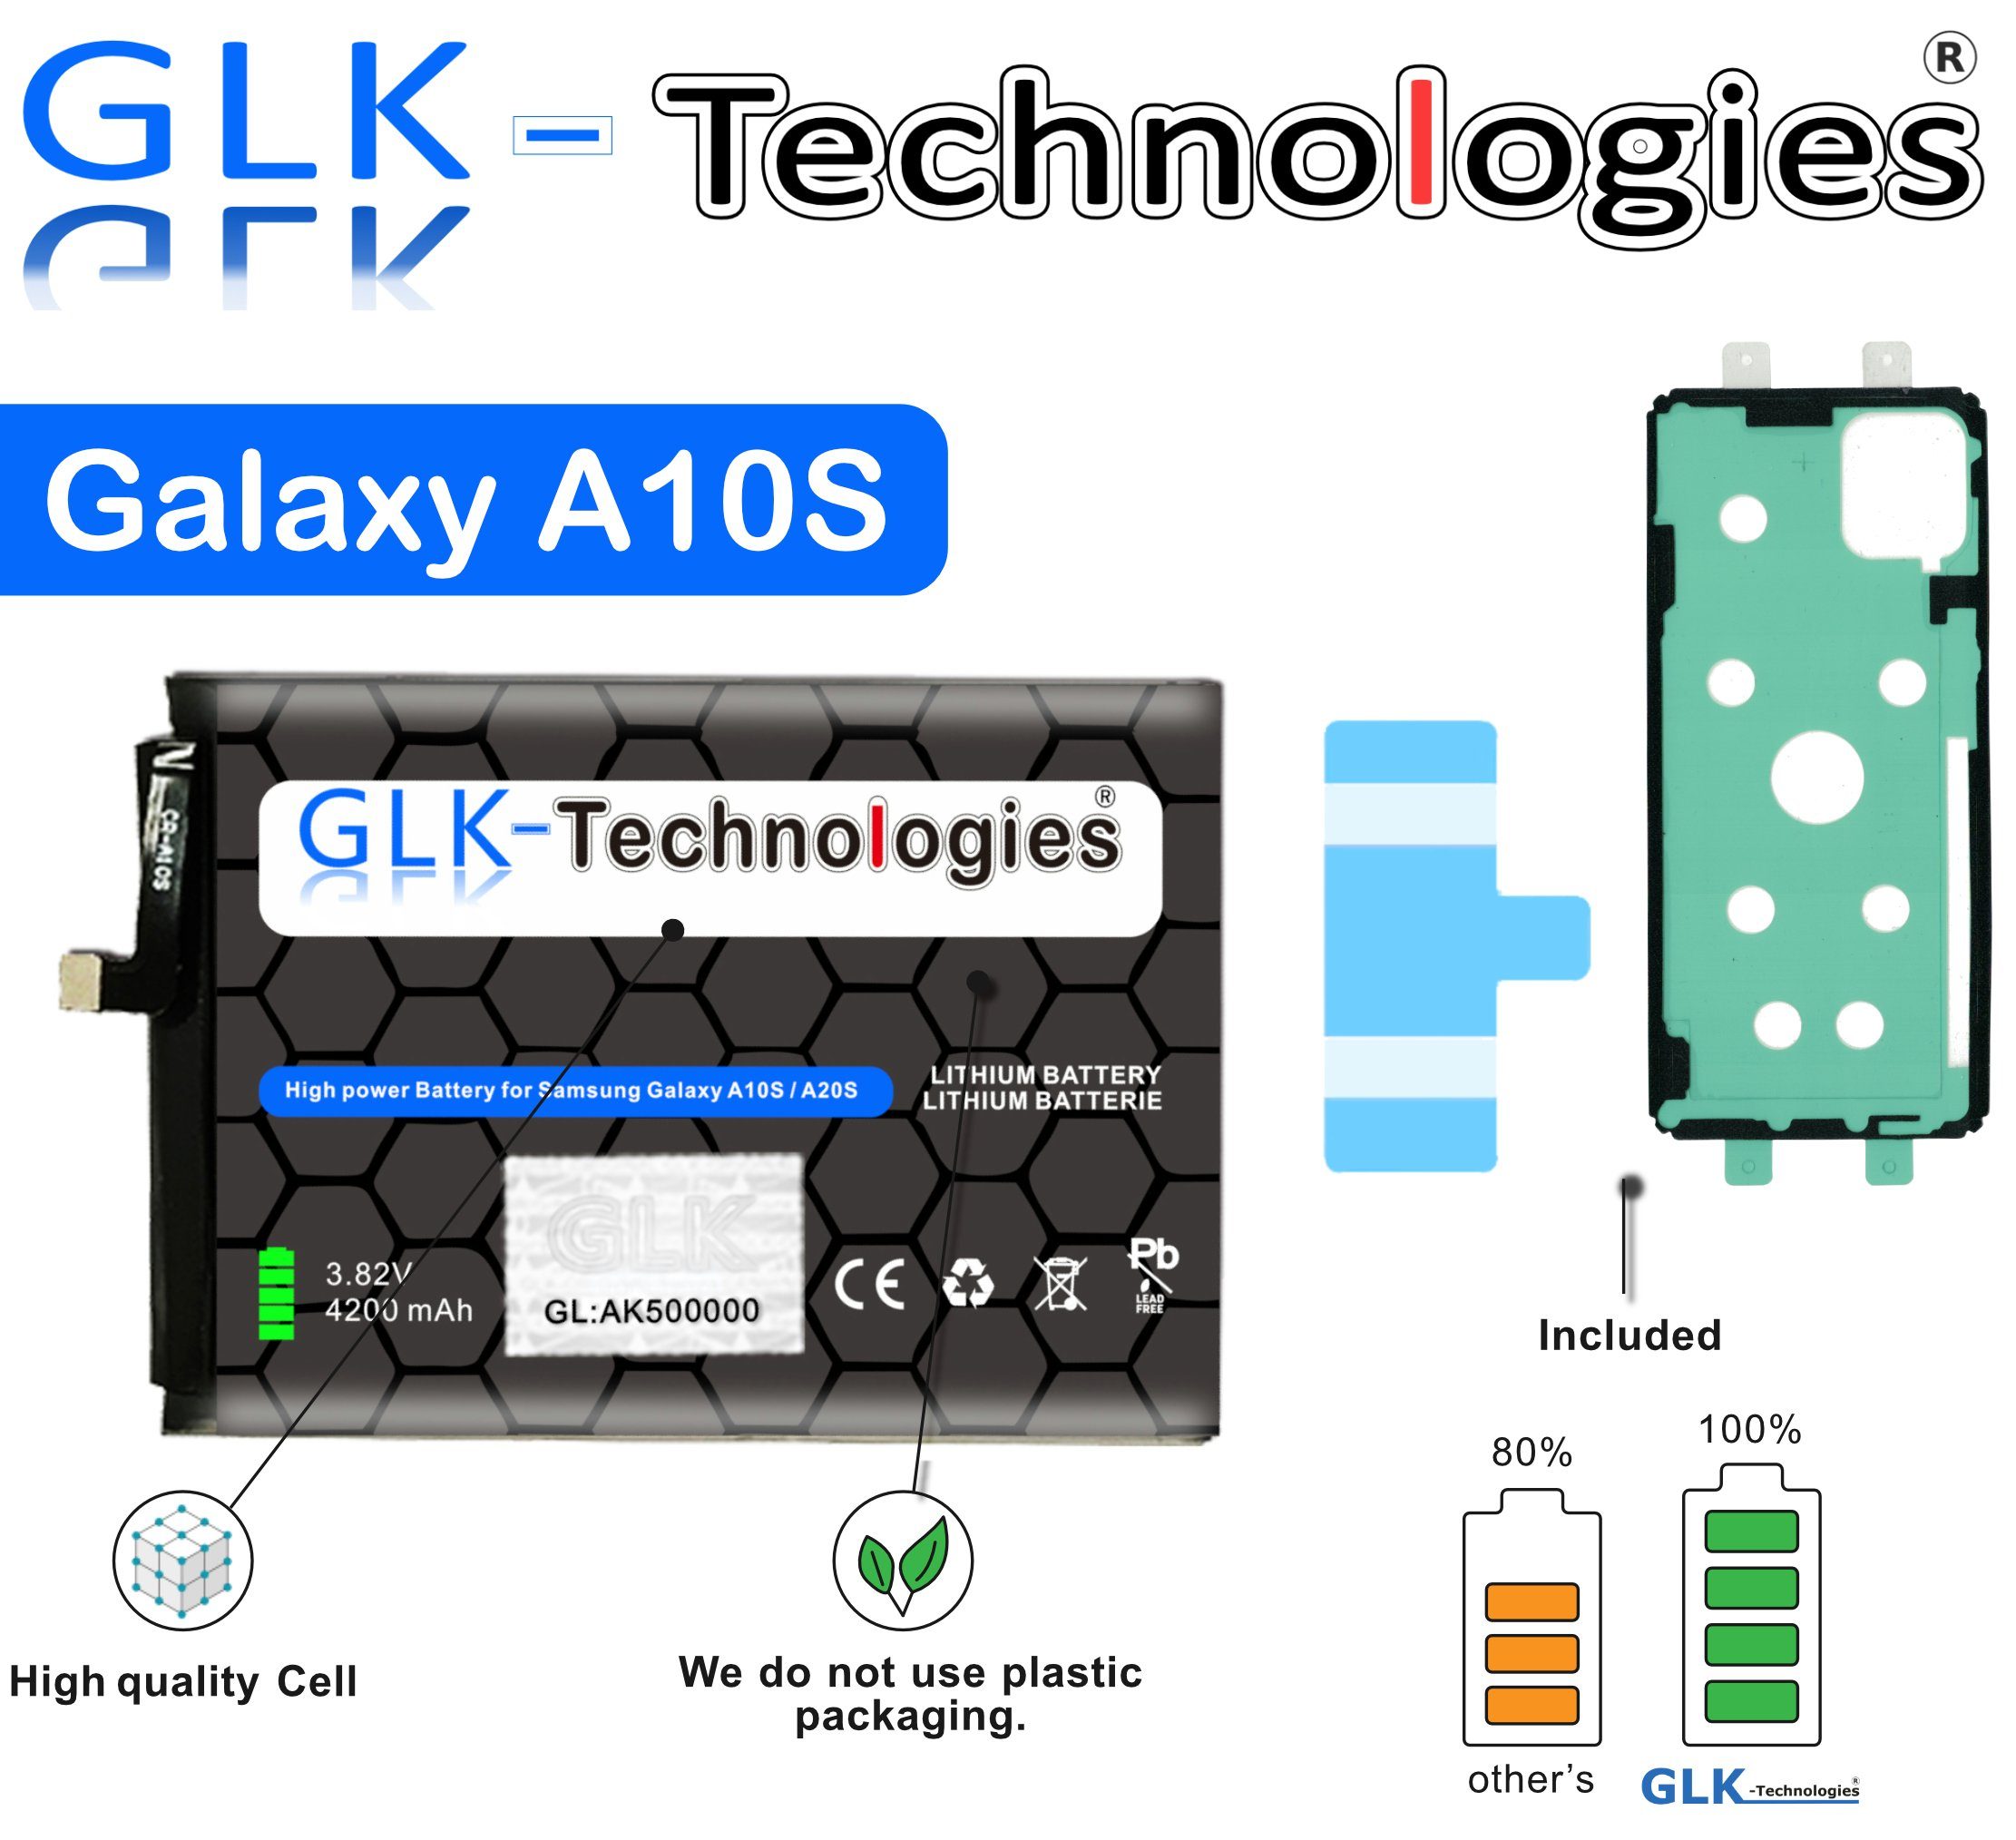 GLK-Technologies High Power Ersatzakku kompatibel mit Samsung Galaxy A10s A107F, GLK-Technologies Battery, accu, 4200 mAh Akku, inkl. 2X Klebebandsätze Handy-Akku